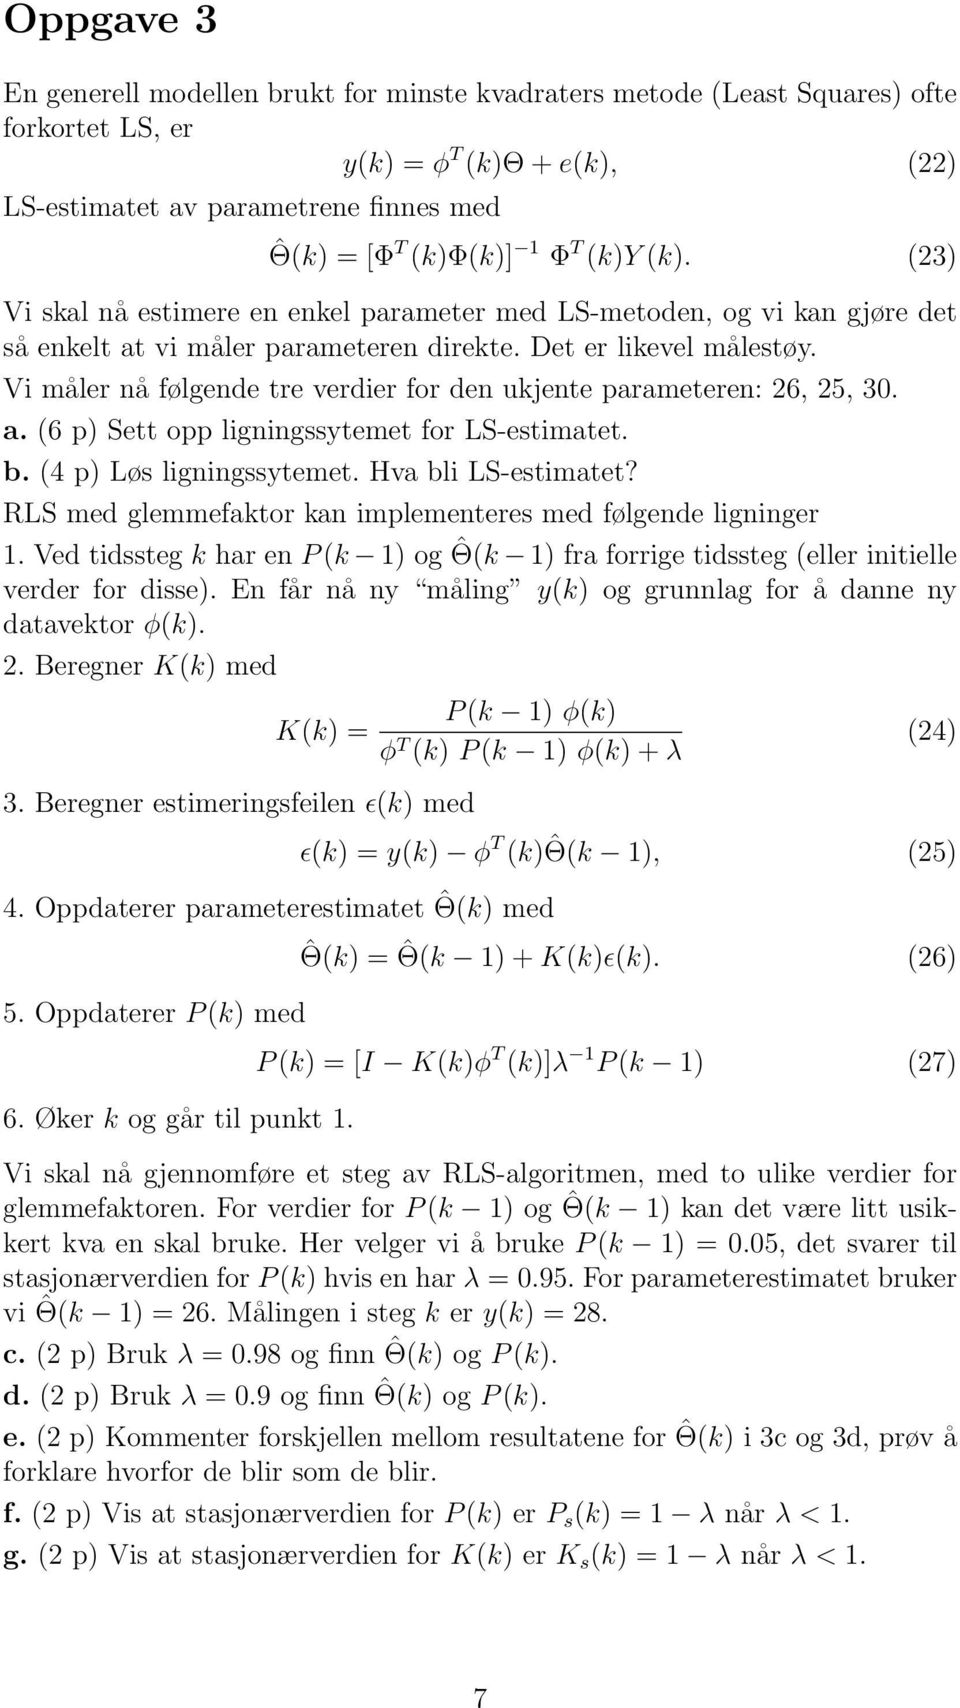 Vi måler nå følgende tre verdier for den ukjente parameteren: 26, 25, 30. a. (6 p) Sett opp ligningssytemet for LS-estimatet. b. (4 p) Løs ligningssytemet. Hva bli LS-estimatet?